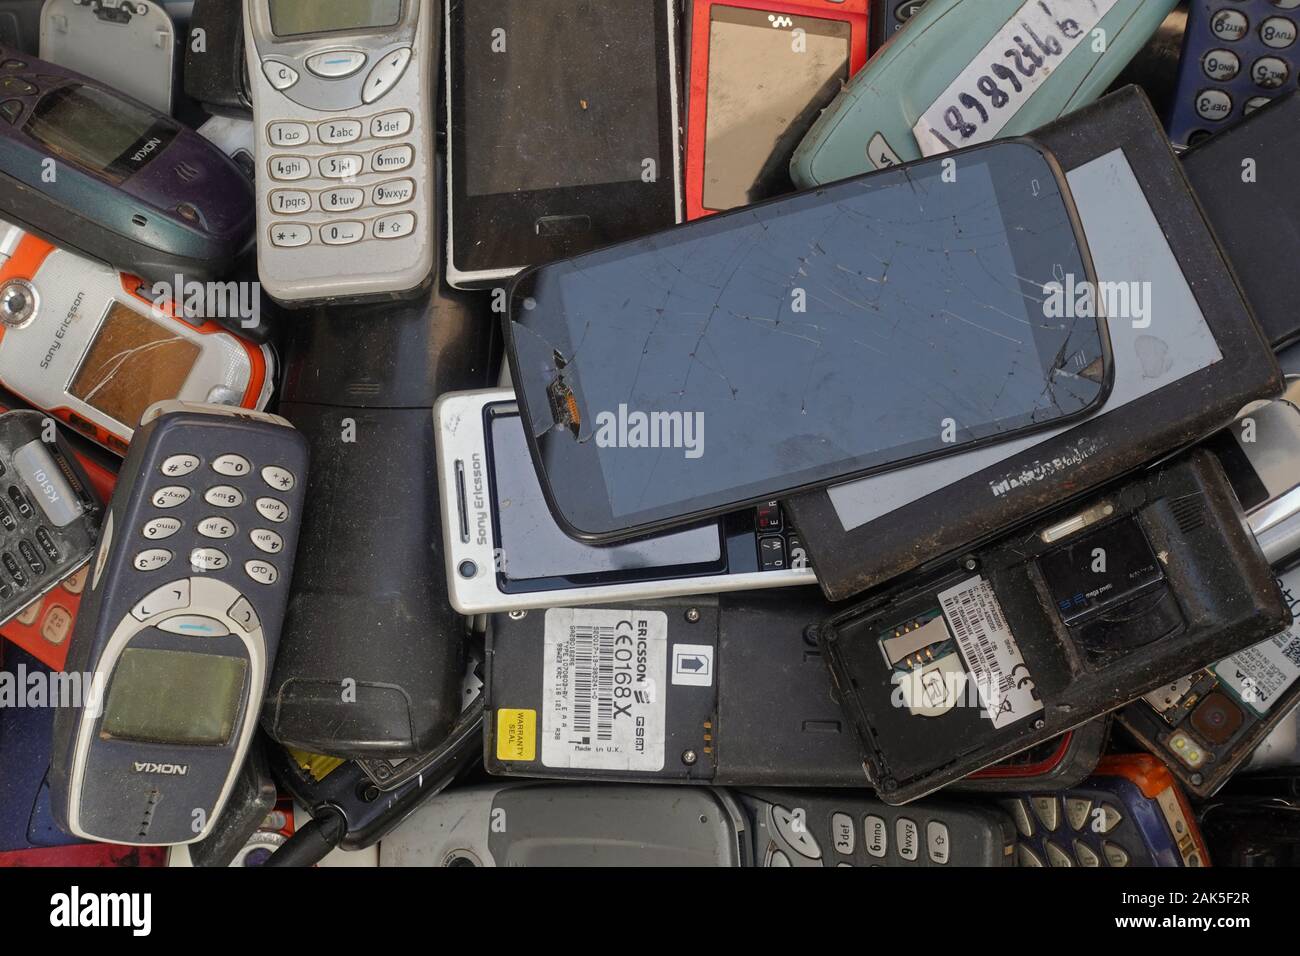 Athens, Grecia - 18 Ottobre 2019: pila di vecchi telefoni cellulari smartphone rotto e vintage cellulari a junk shop. Foto Stock